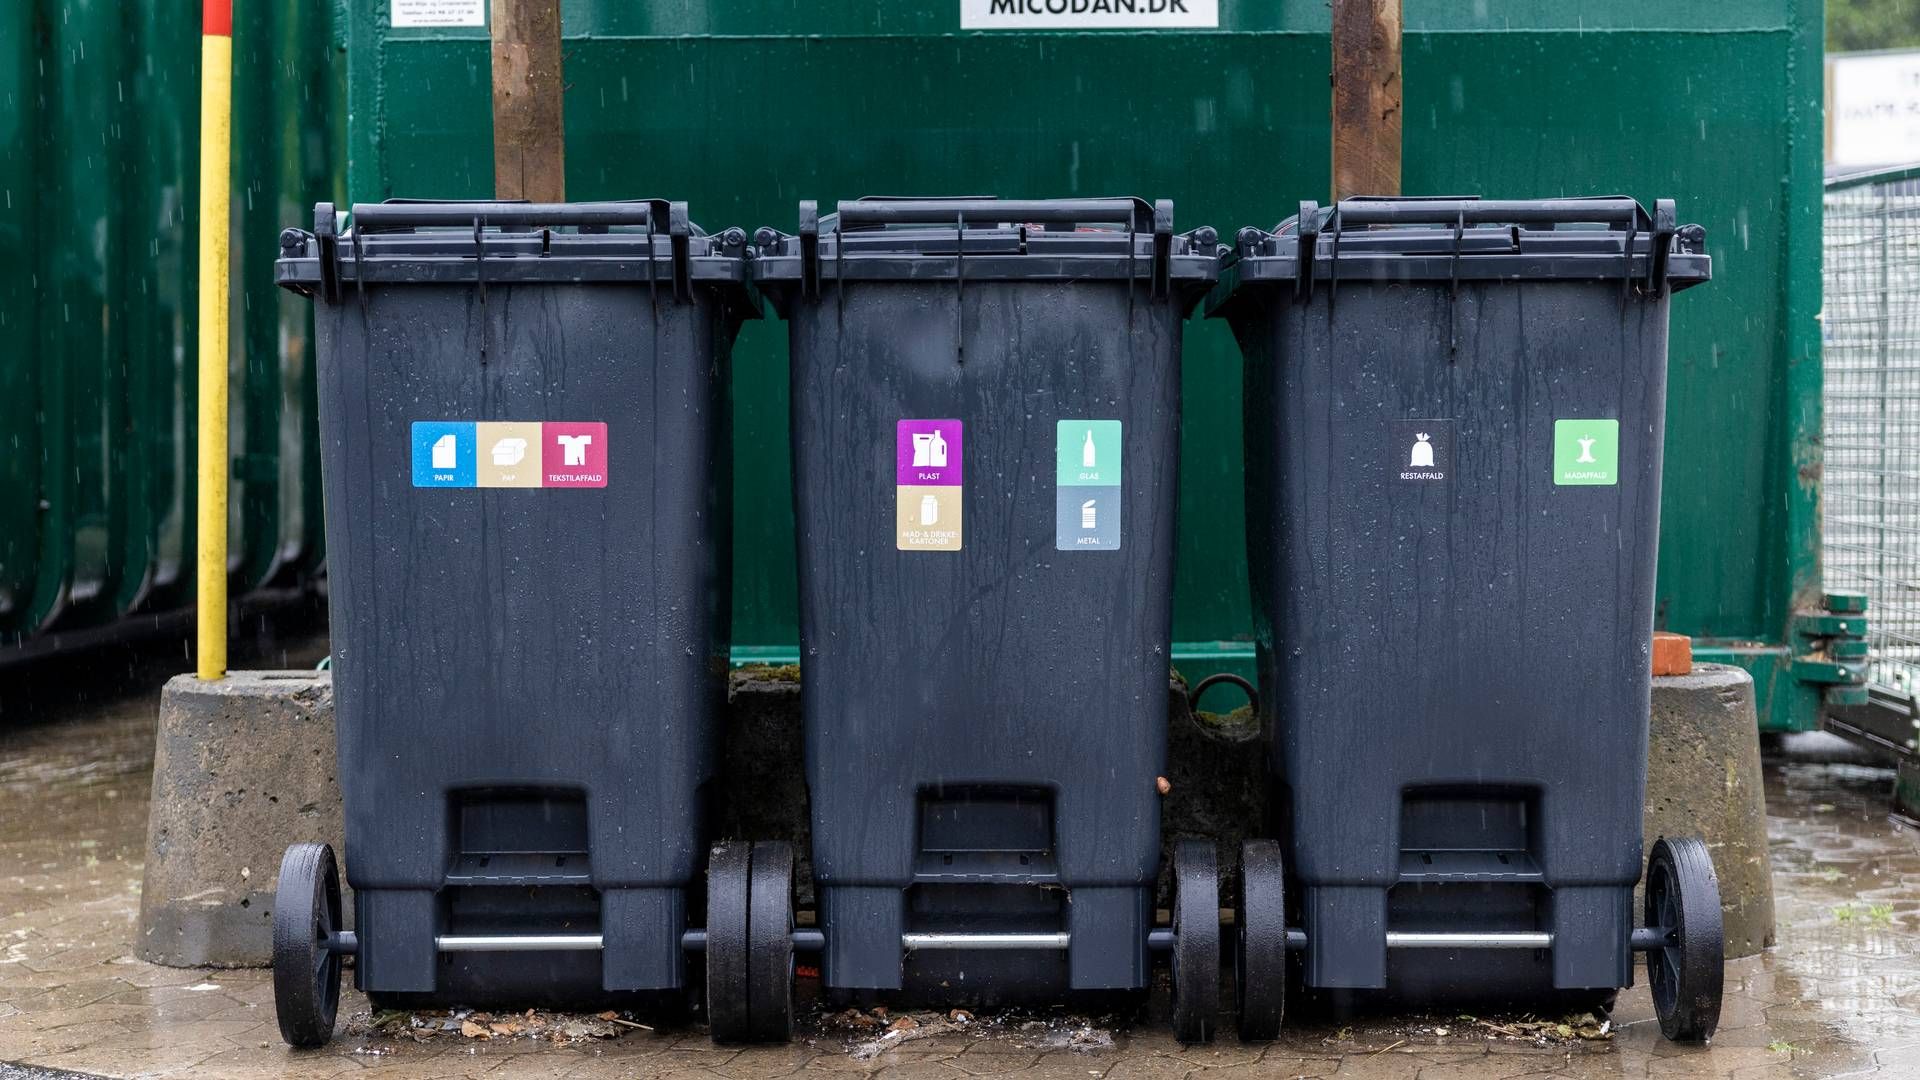 Hvidover Kommune havde forventet, at affald atter vil blive hentet fredag. | Foto: Kim Frost